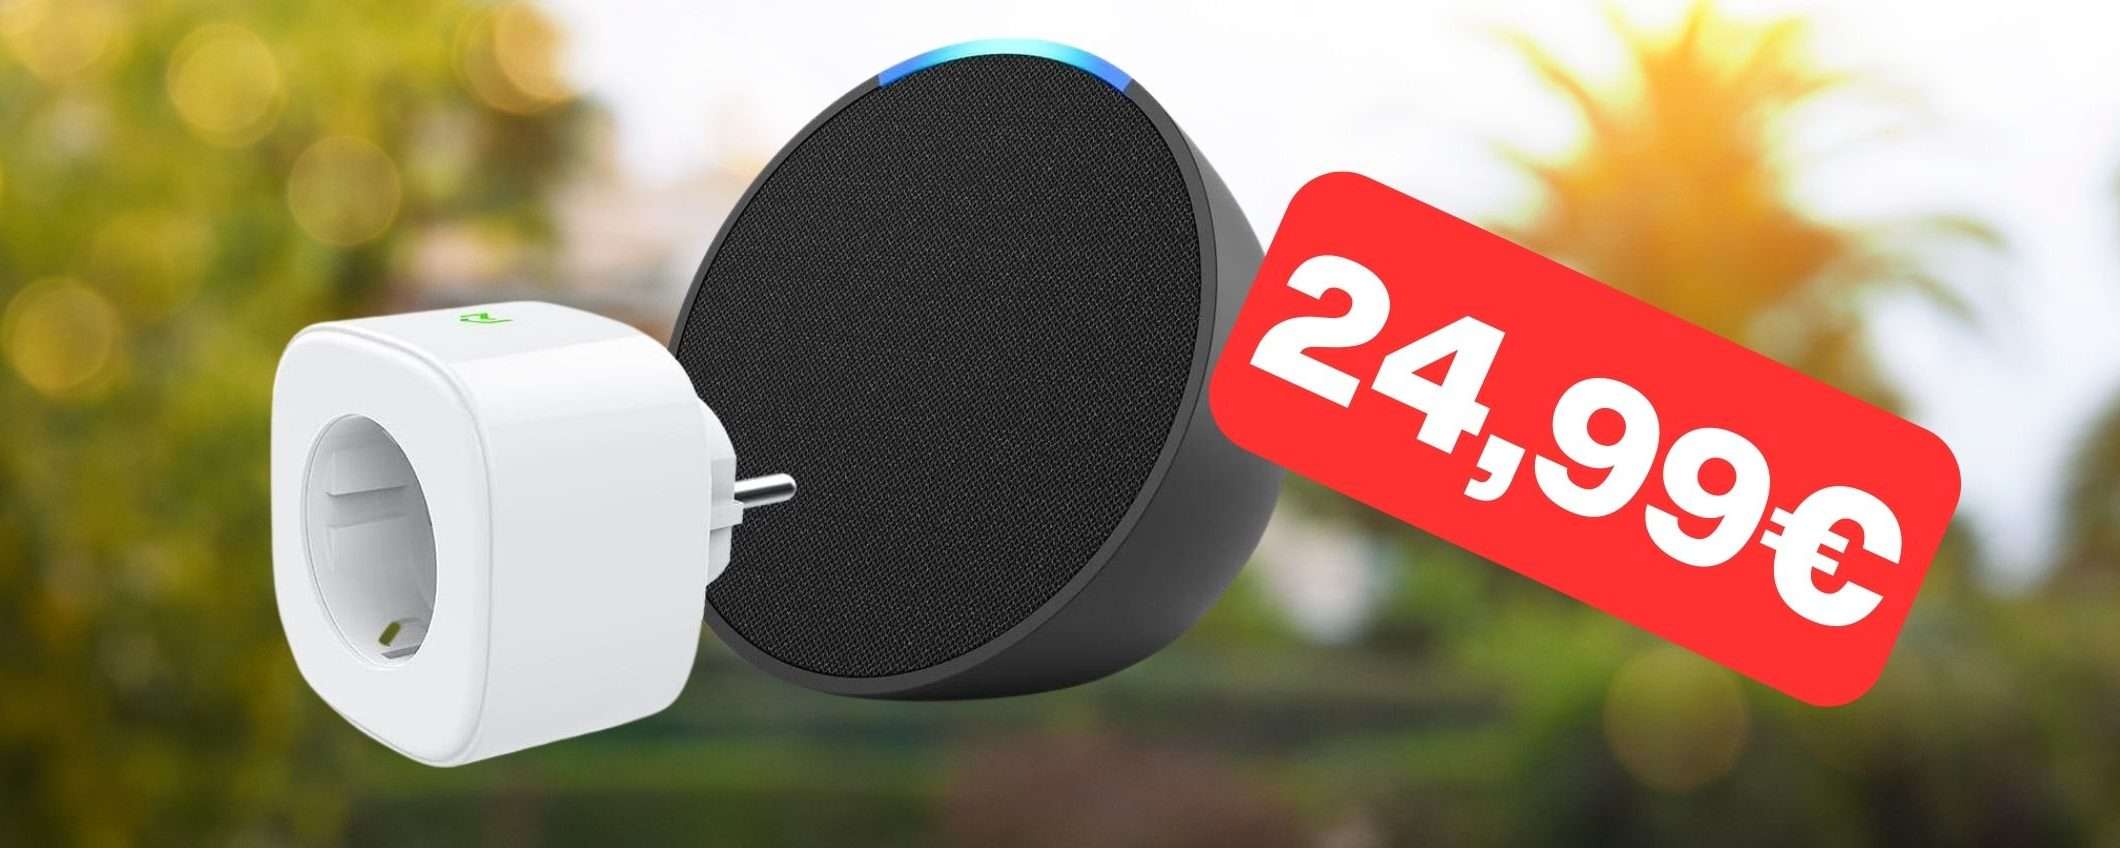 Echo Pop con Meross Smart Plug: bundle in OFFERTISSIMA Amazon (24,99€)